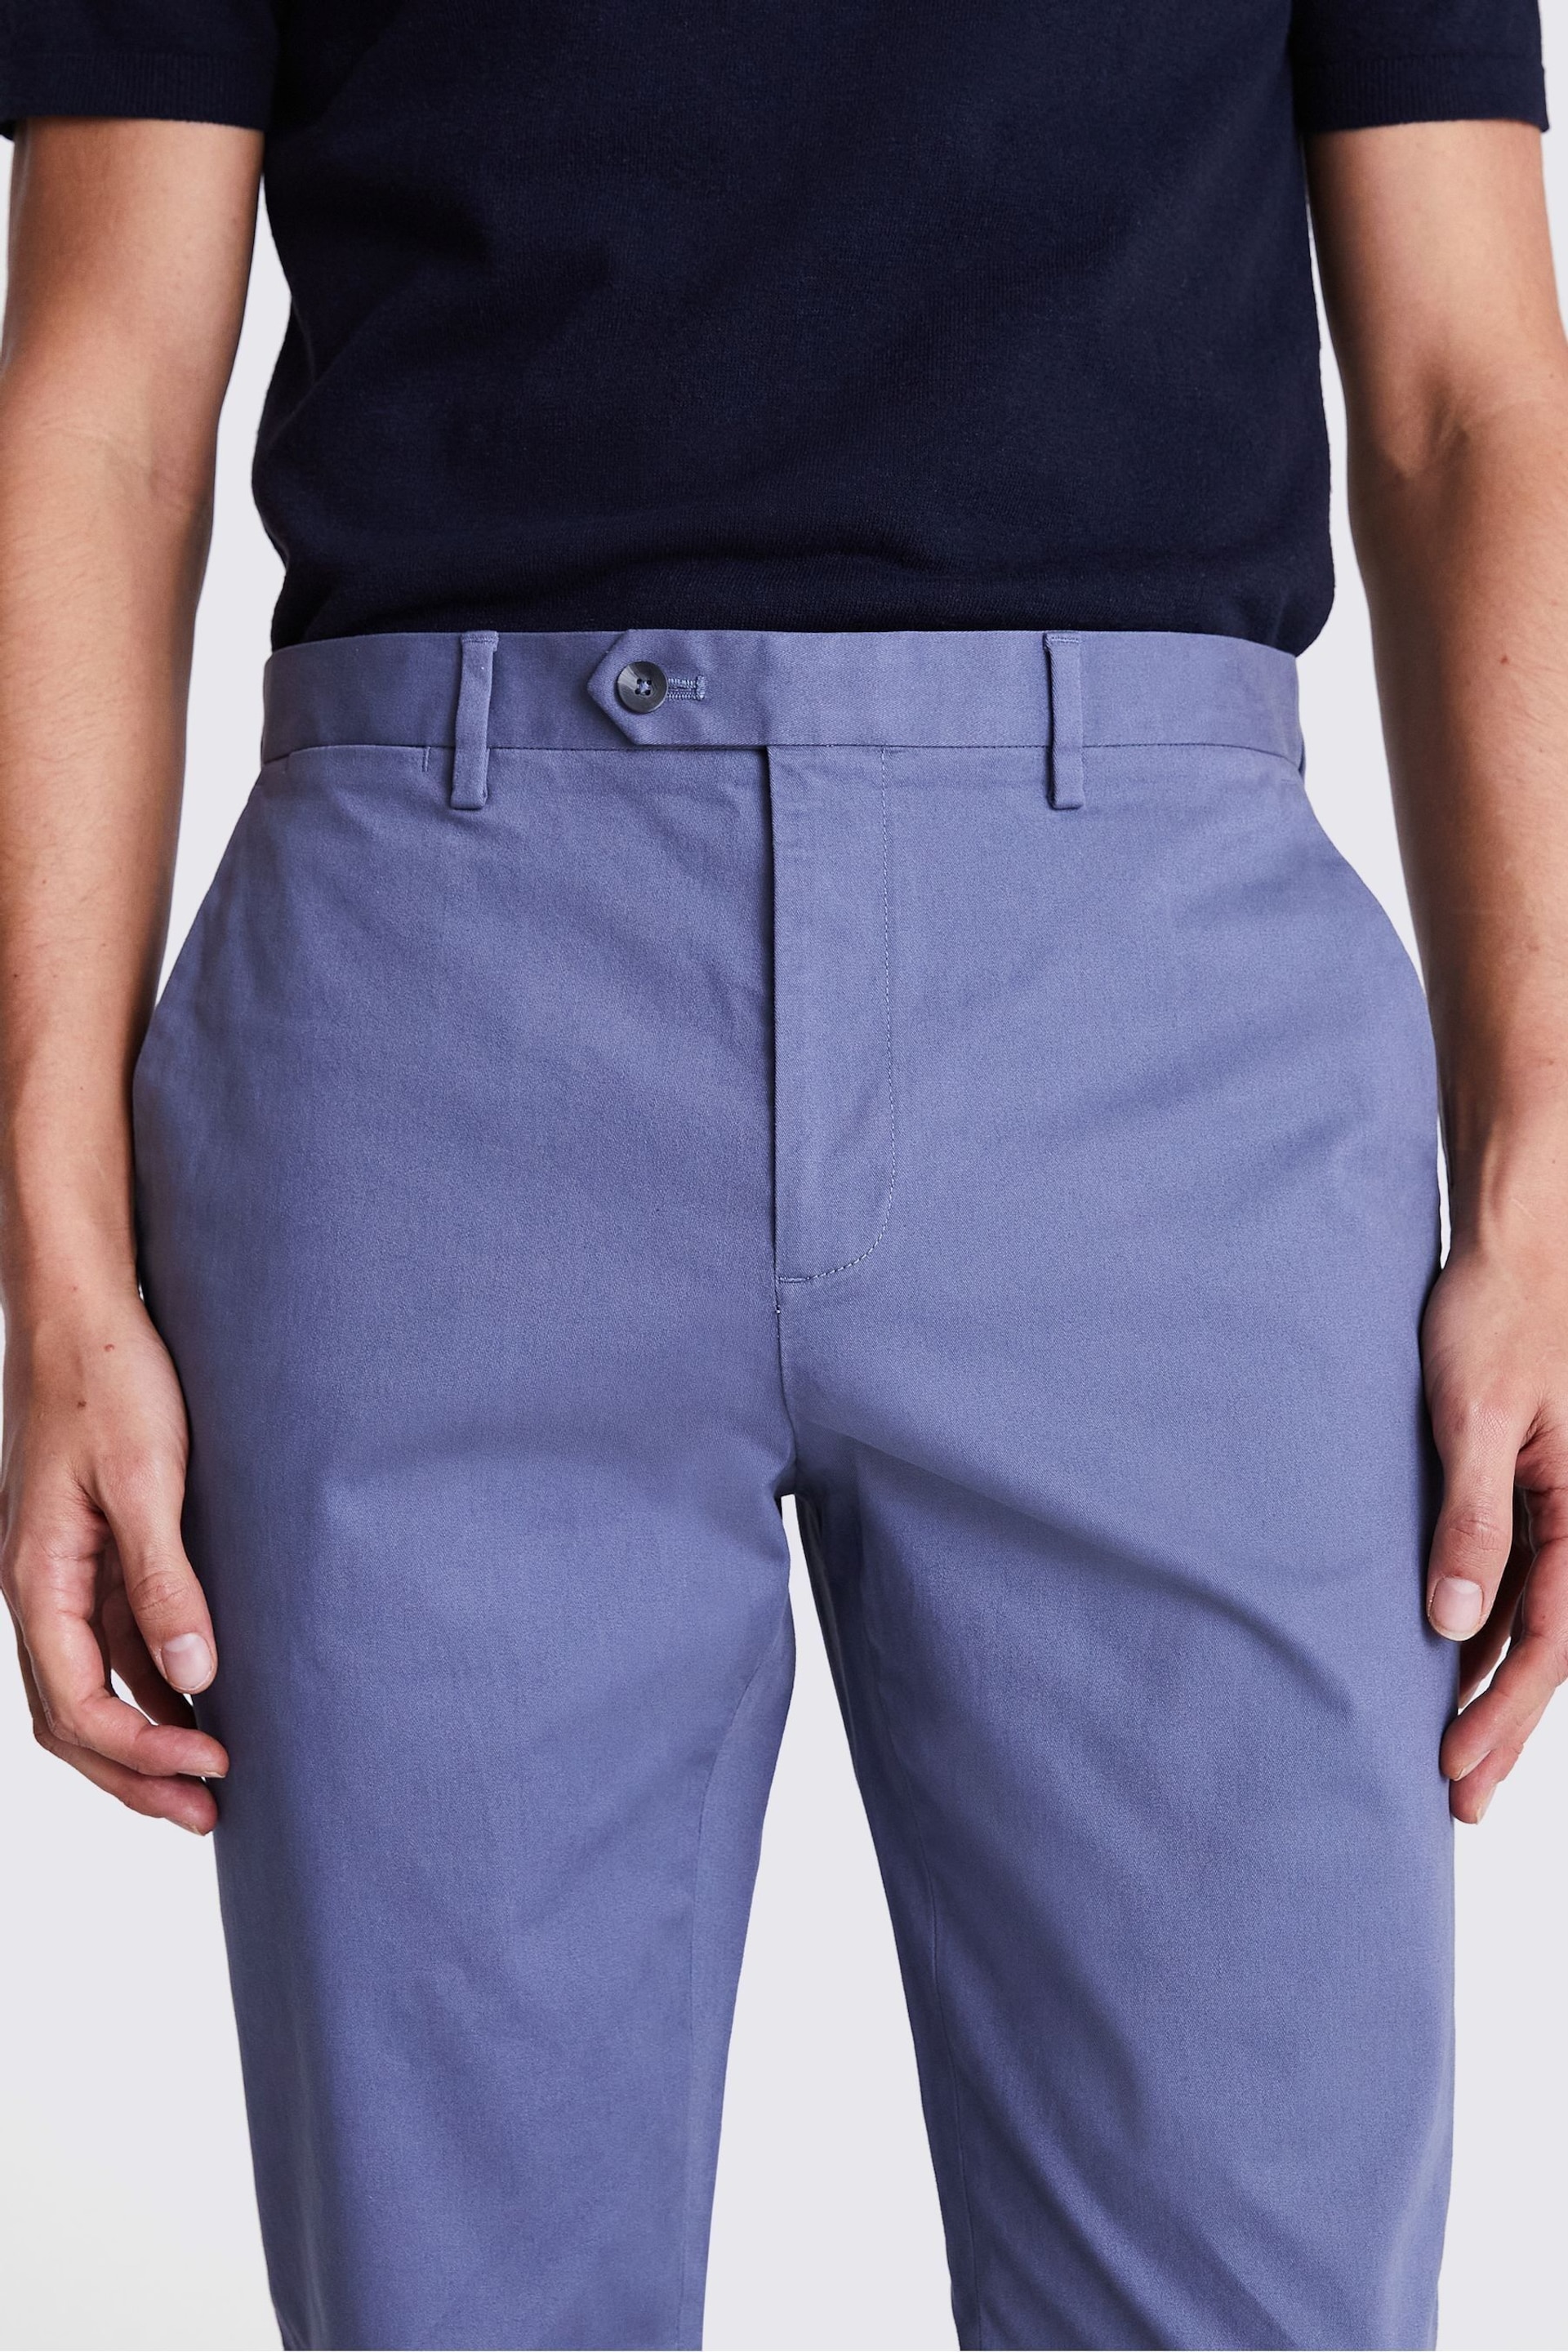 MOSS Dark Blue Slim Chino Trousers - Image 3 of 3